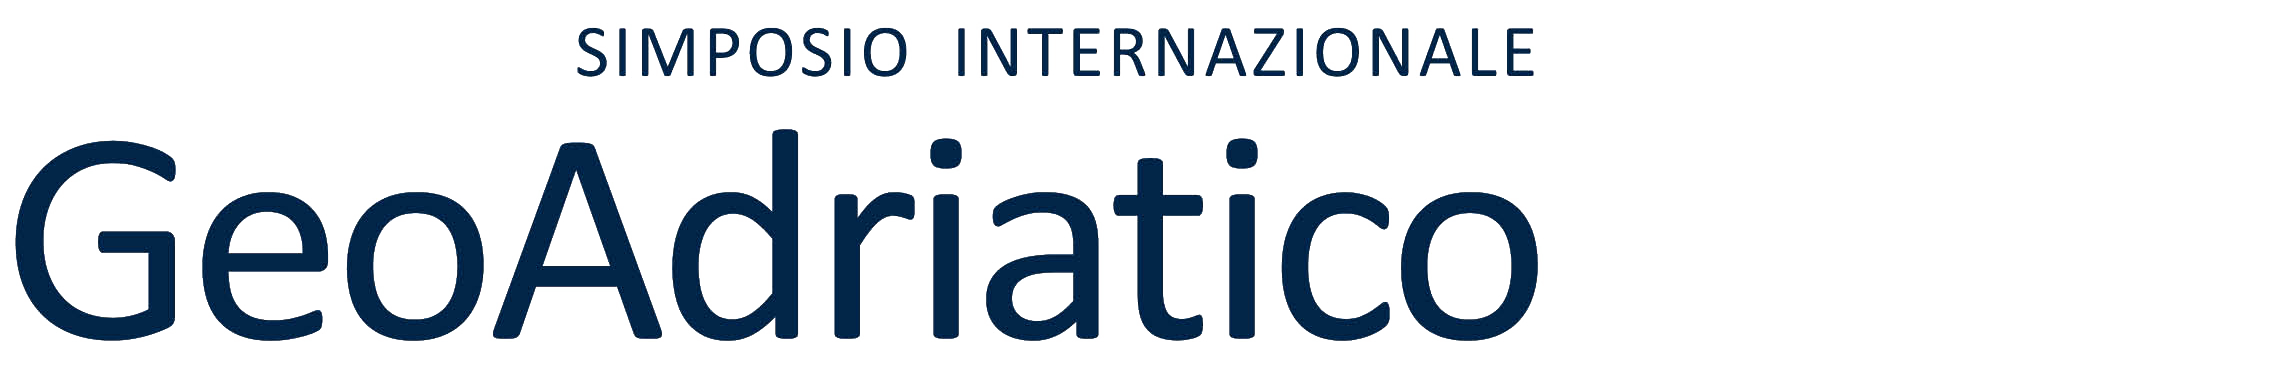 Logo GeoAdriatico Simposio internazionale e1713457426560